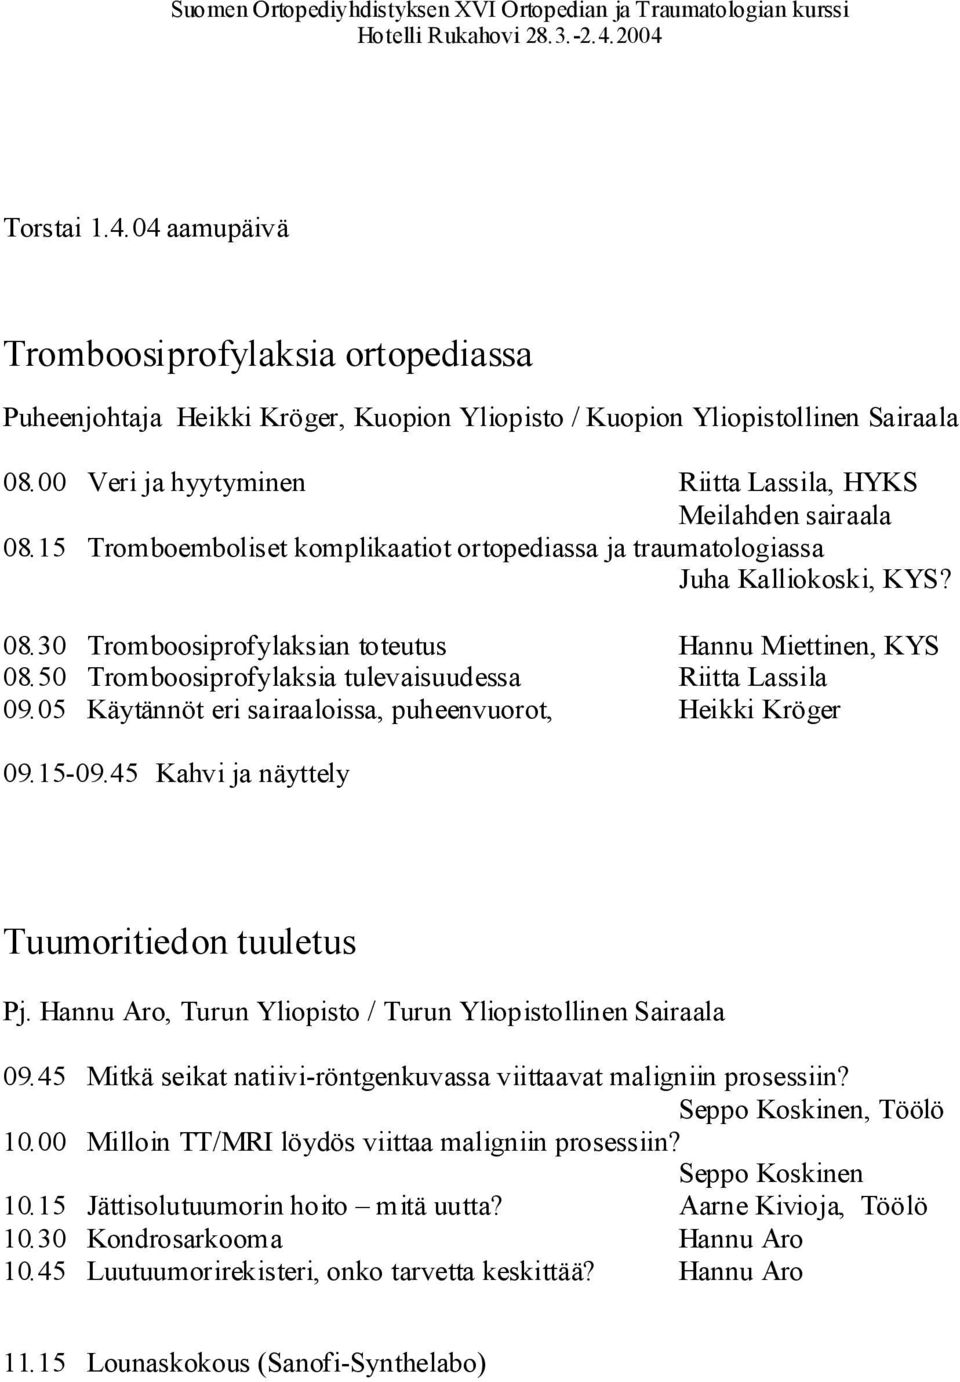 50 Tromboosiprofylaksia tulevaisuudessa Riitta Lassila 09.05 Käytännöt eri sairaaloissa, puheenvuorot, Heikki Kröger 09.15-09.45 Kahvi ja näyttely Tuumoritiedon tuuletus Pj.